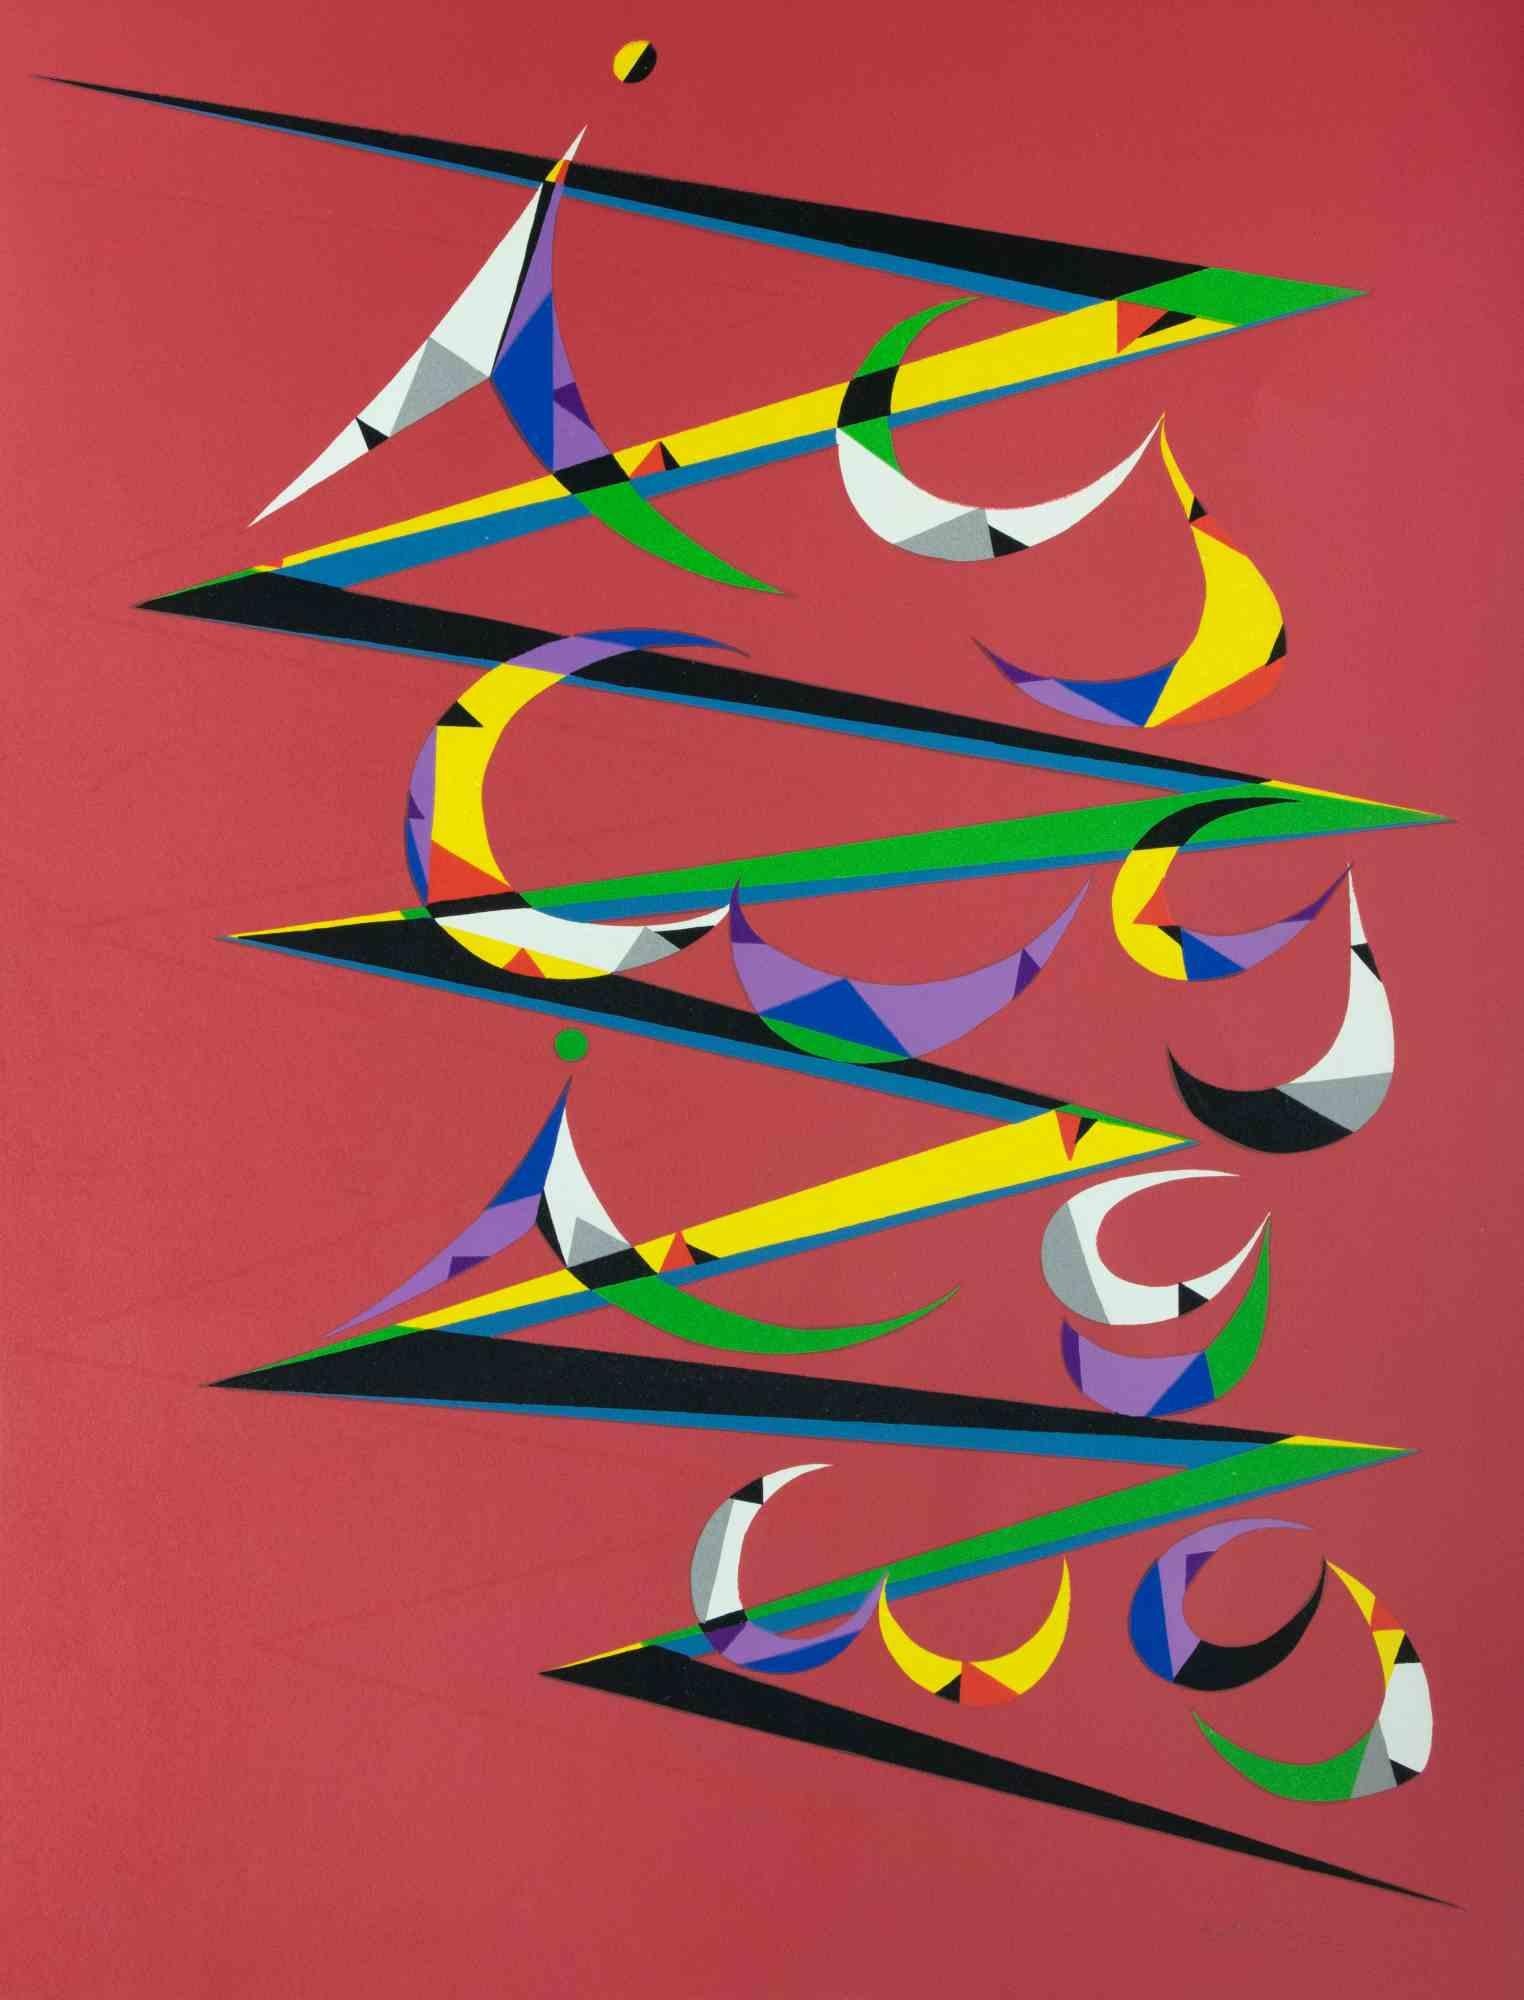 Composition est une lithographie, réalisée par Rafael Alberti en 1972.

Signé à la main, daté et numéroté dans la marge inférieure.

Edition de 99.

L'œuvre d'art représente une composition brillante à travers les formes et les couleurs, avec une